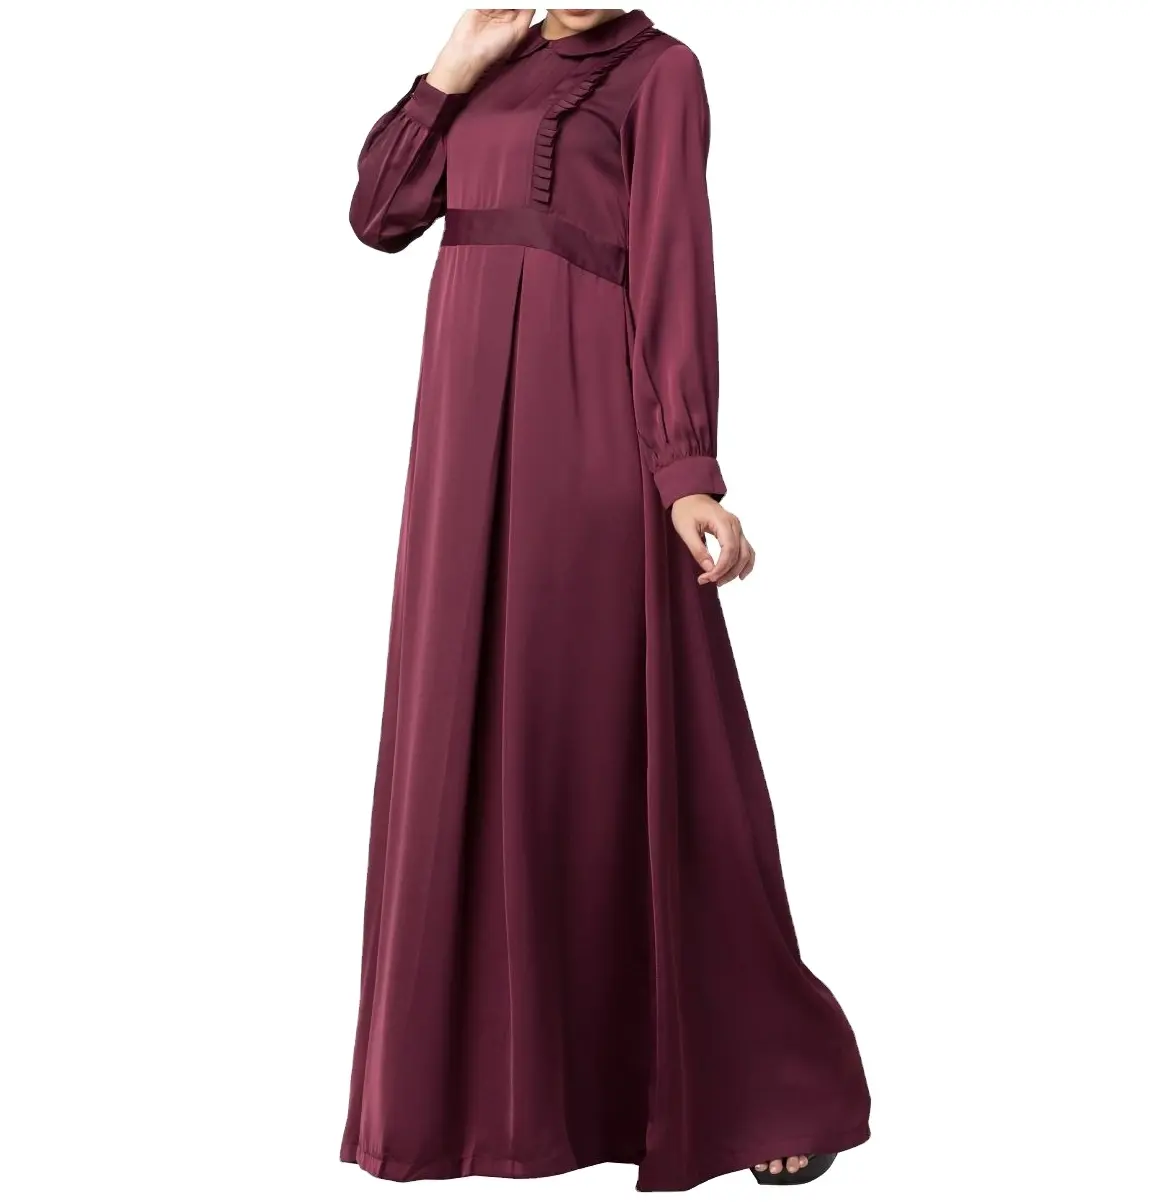 Hot-selling Abaya In Dubai Maxi Muslim Dress